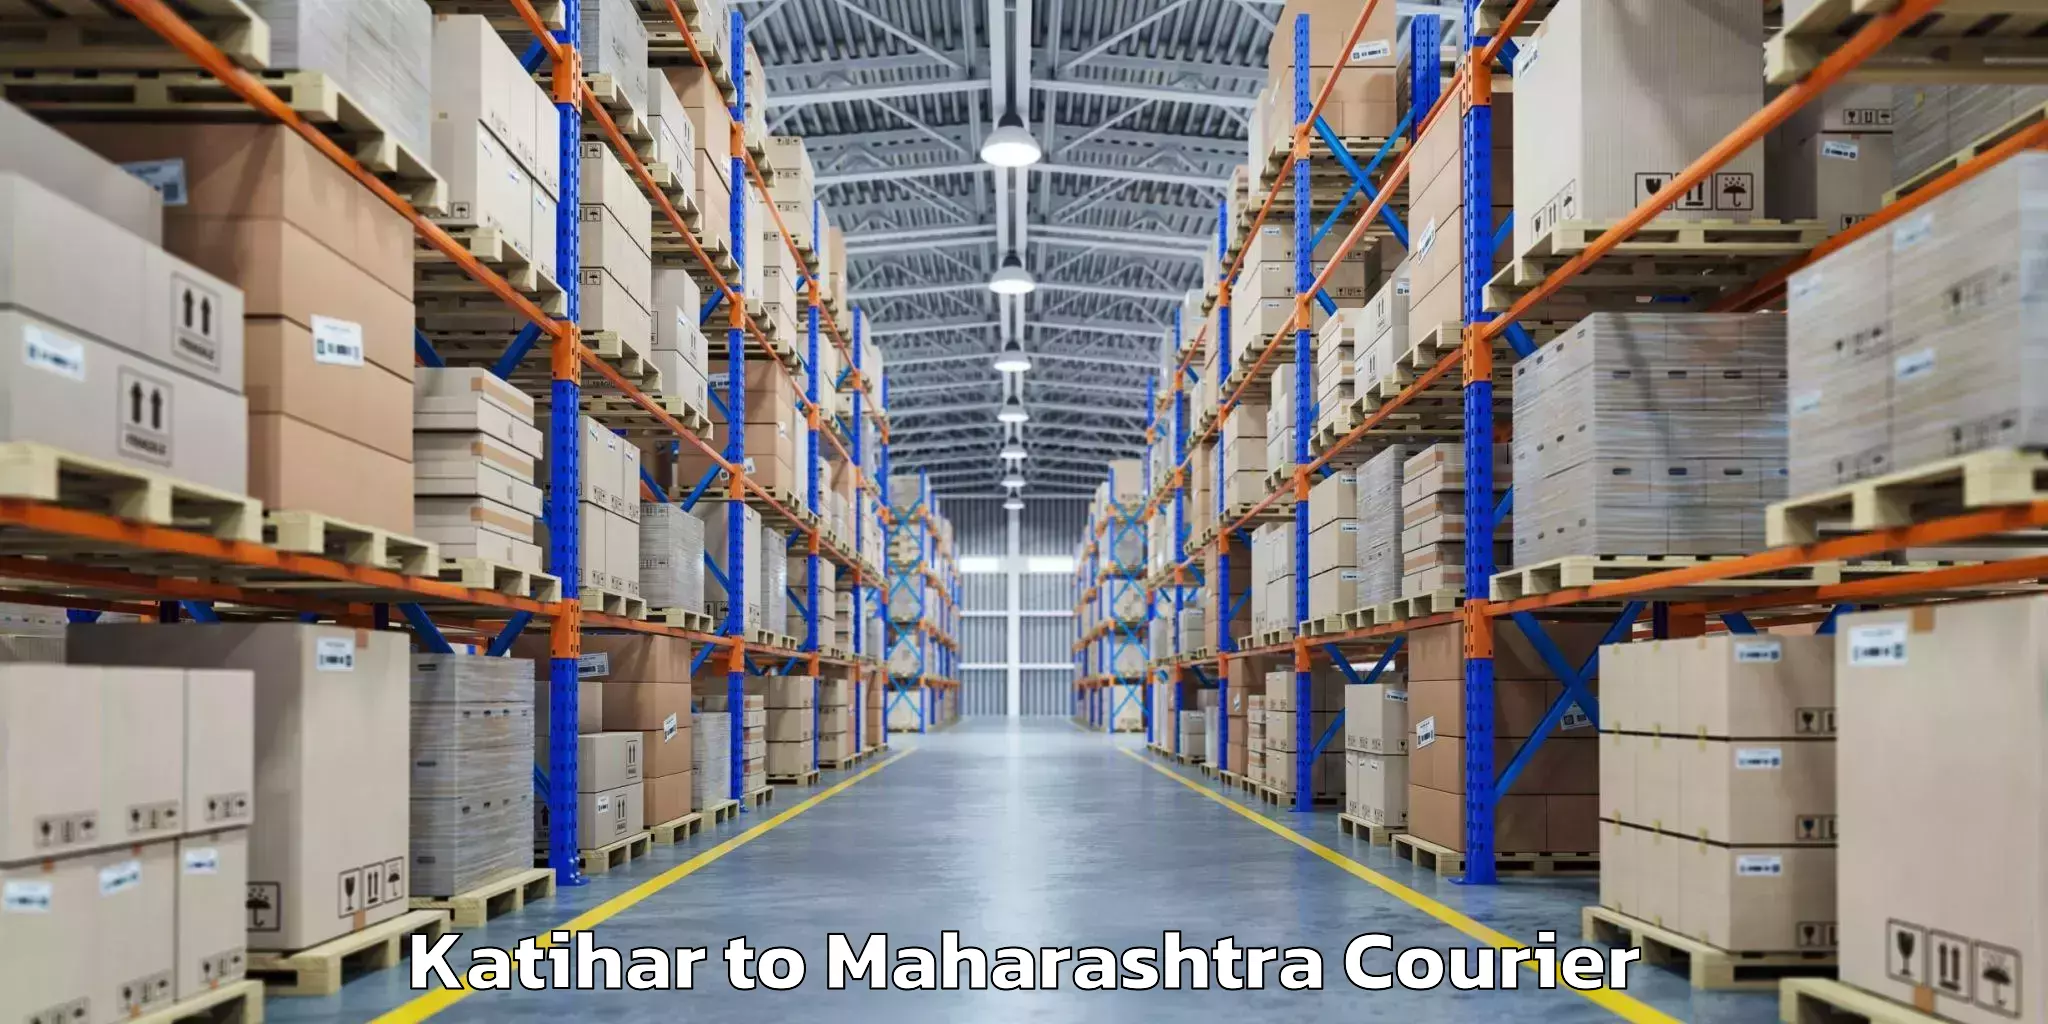 Baggage shipping service Katihar to Maharashtra